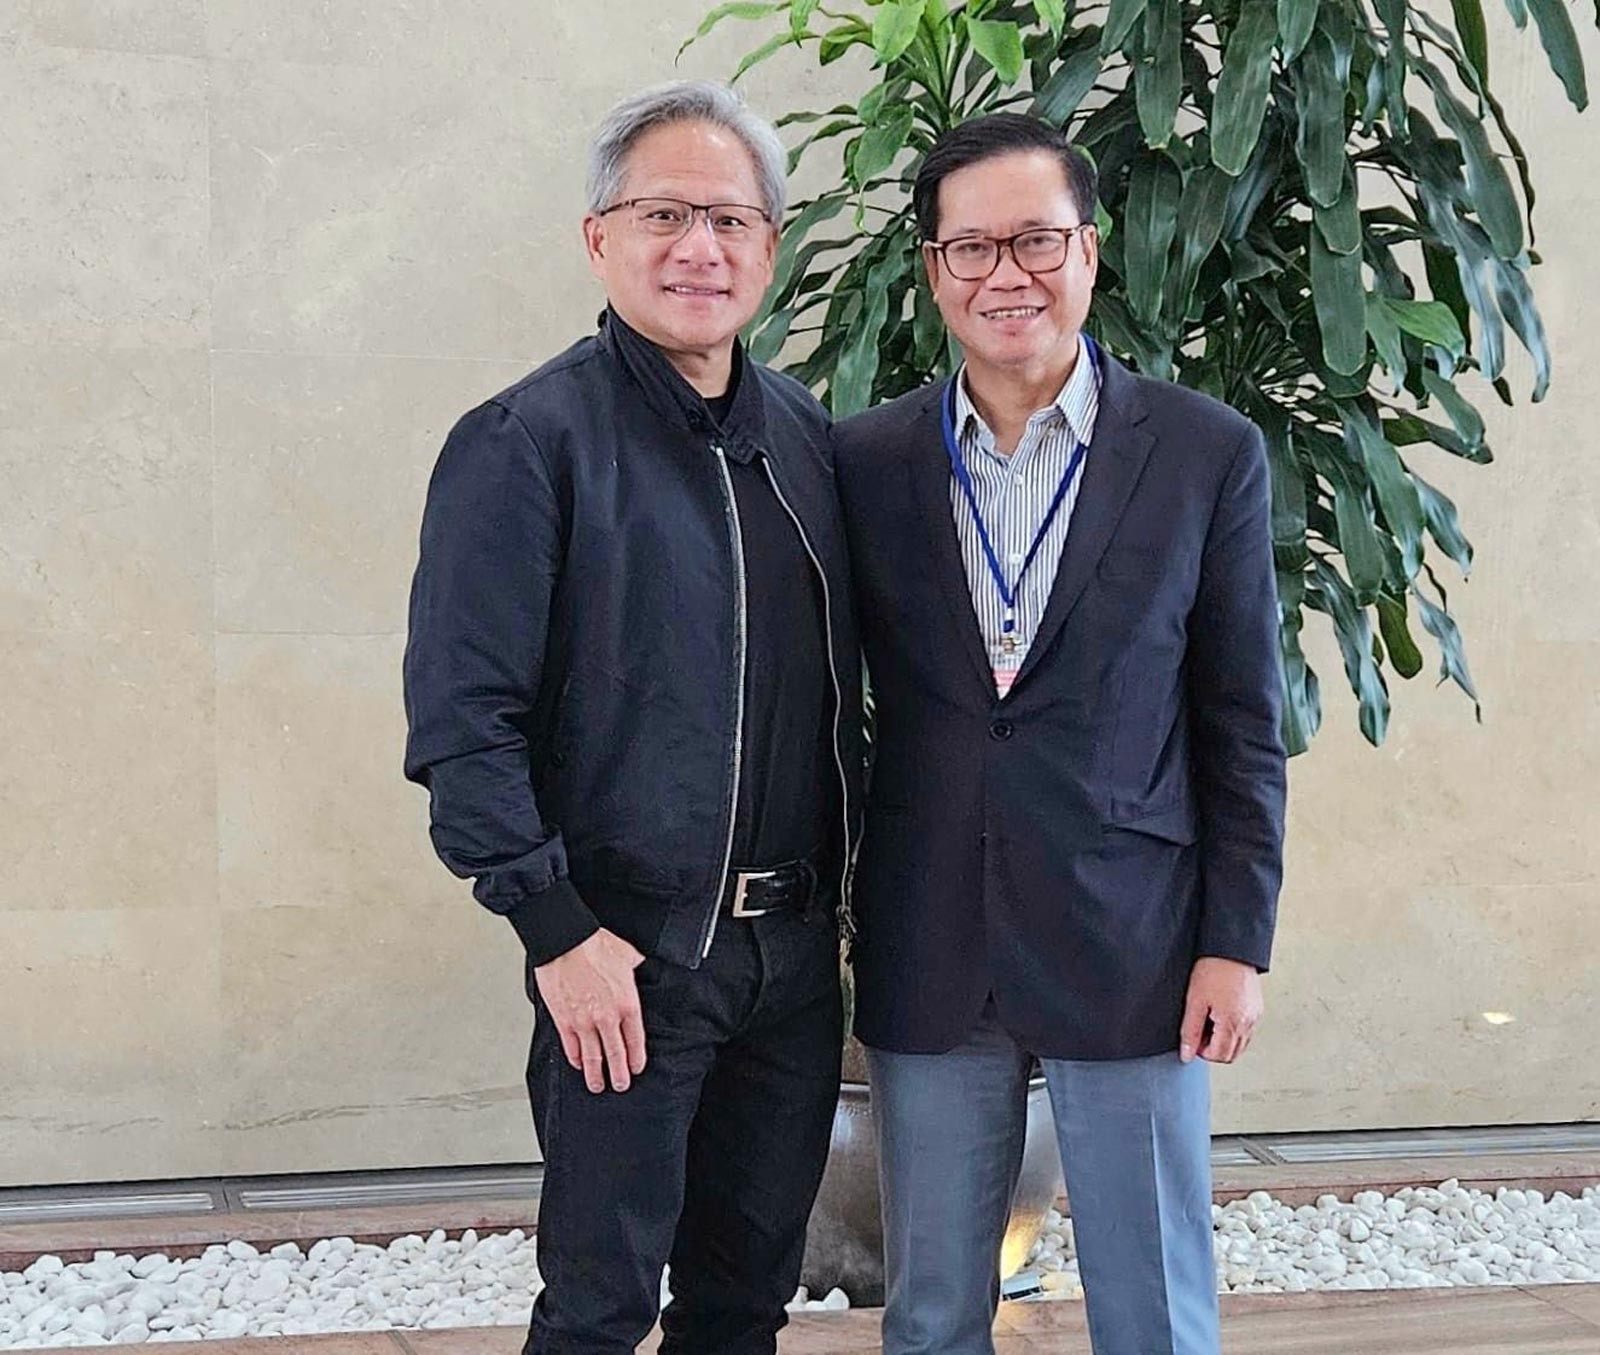 Chủ tịch Jensen Huang đã cảm nhận được sự chân thành từ Lãnh đạo Việt Nam – Thủ tướng Chính phủ Phạm Minh Chính muốn đưa Việt Nam phát triển về công nghệ.